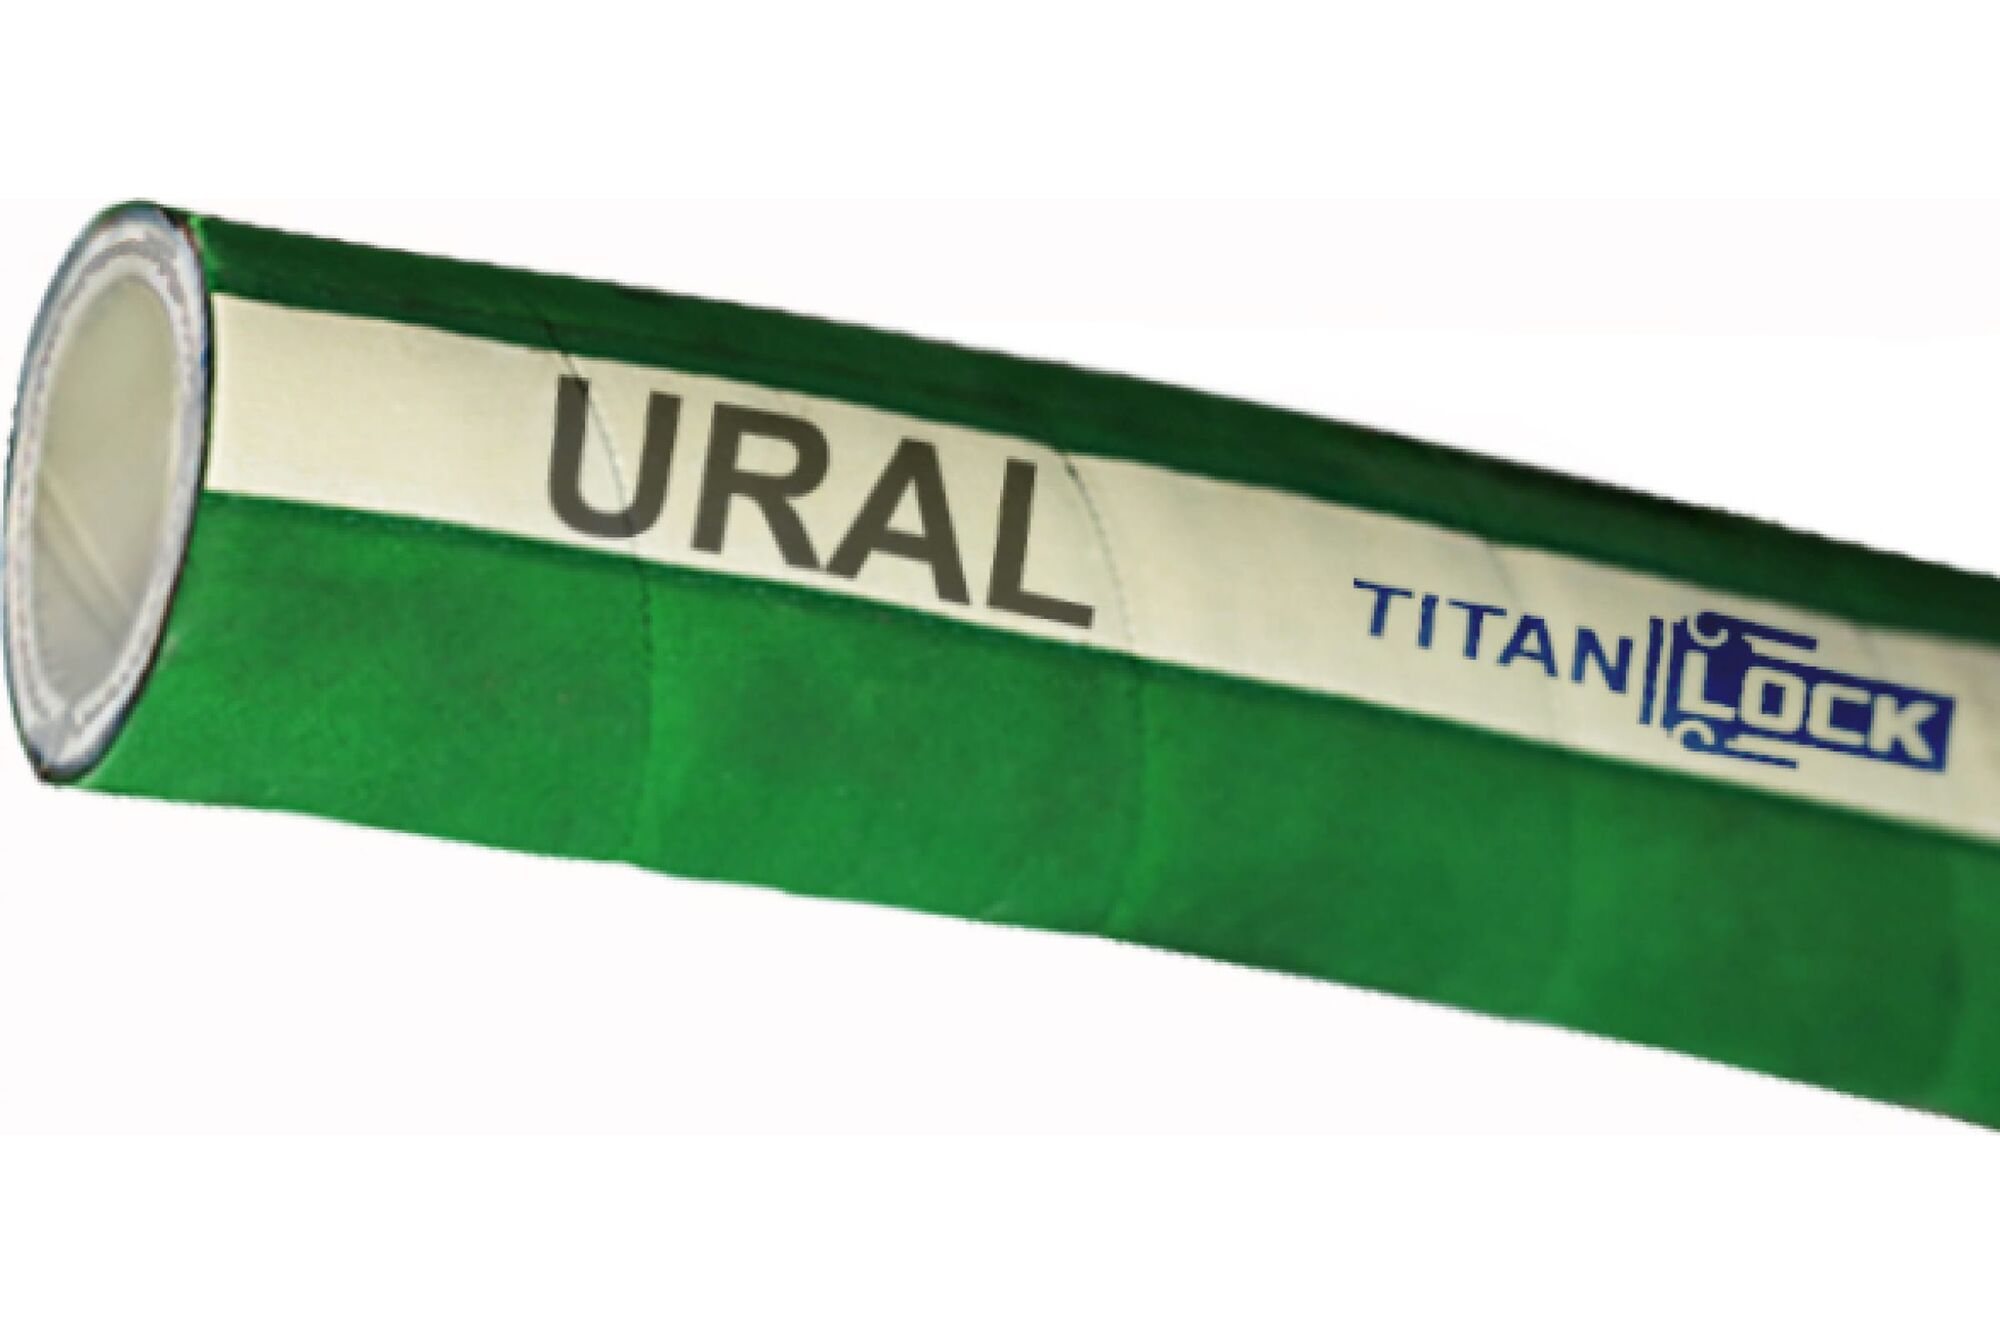 Химостойкий рукав «URAL», внутренний диаметр 25 мм, 16bar, 10 метров, UHMWPE, н/в TITAN LOCK TL025UR